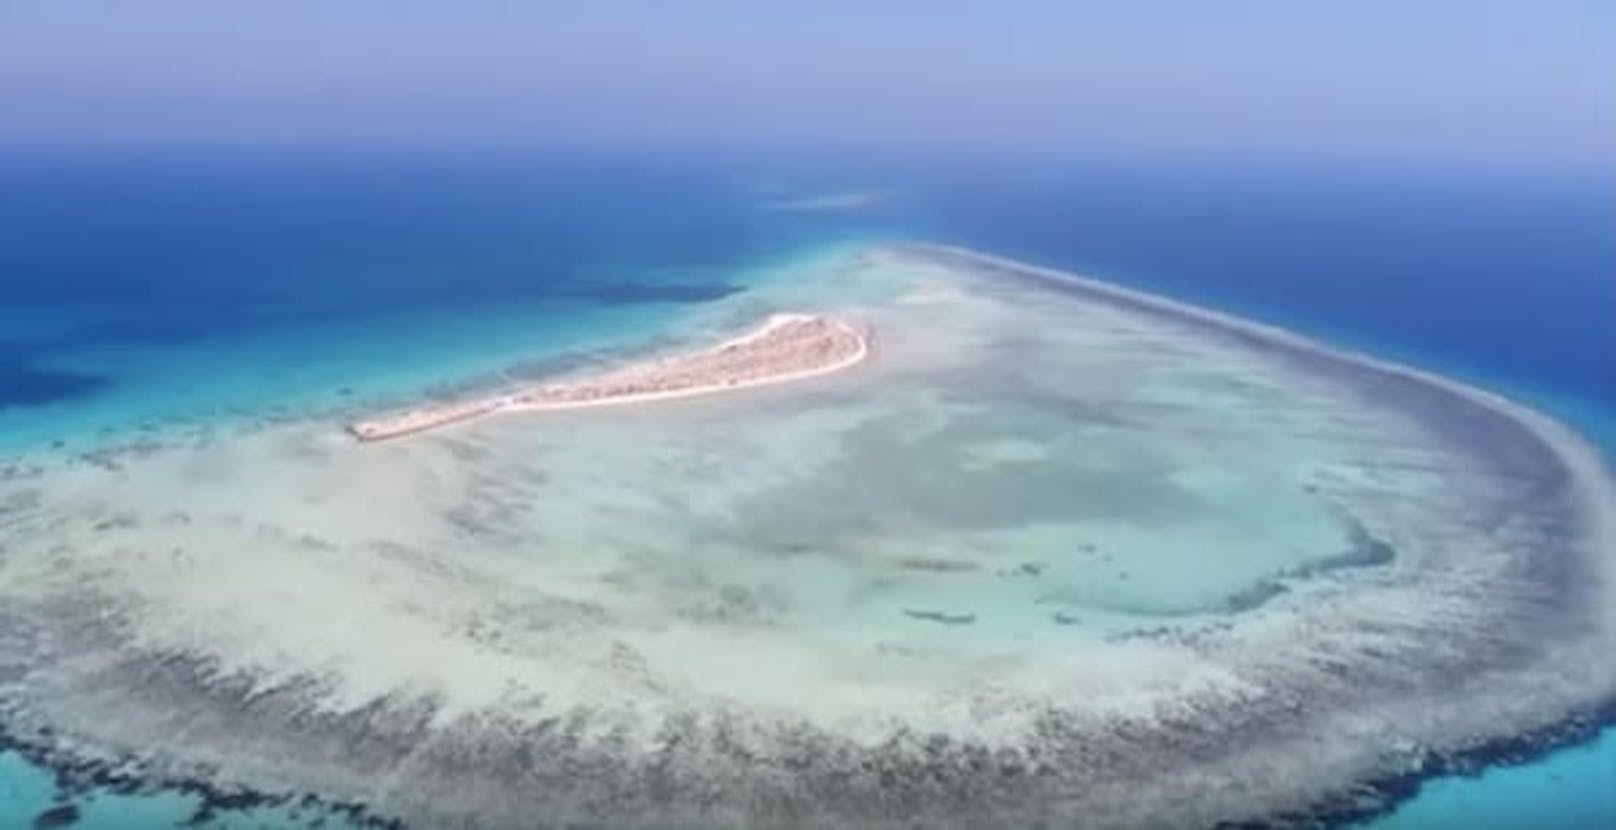 Sieht aus wie die Malediven?